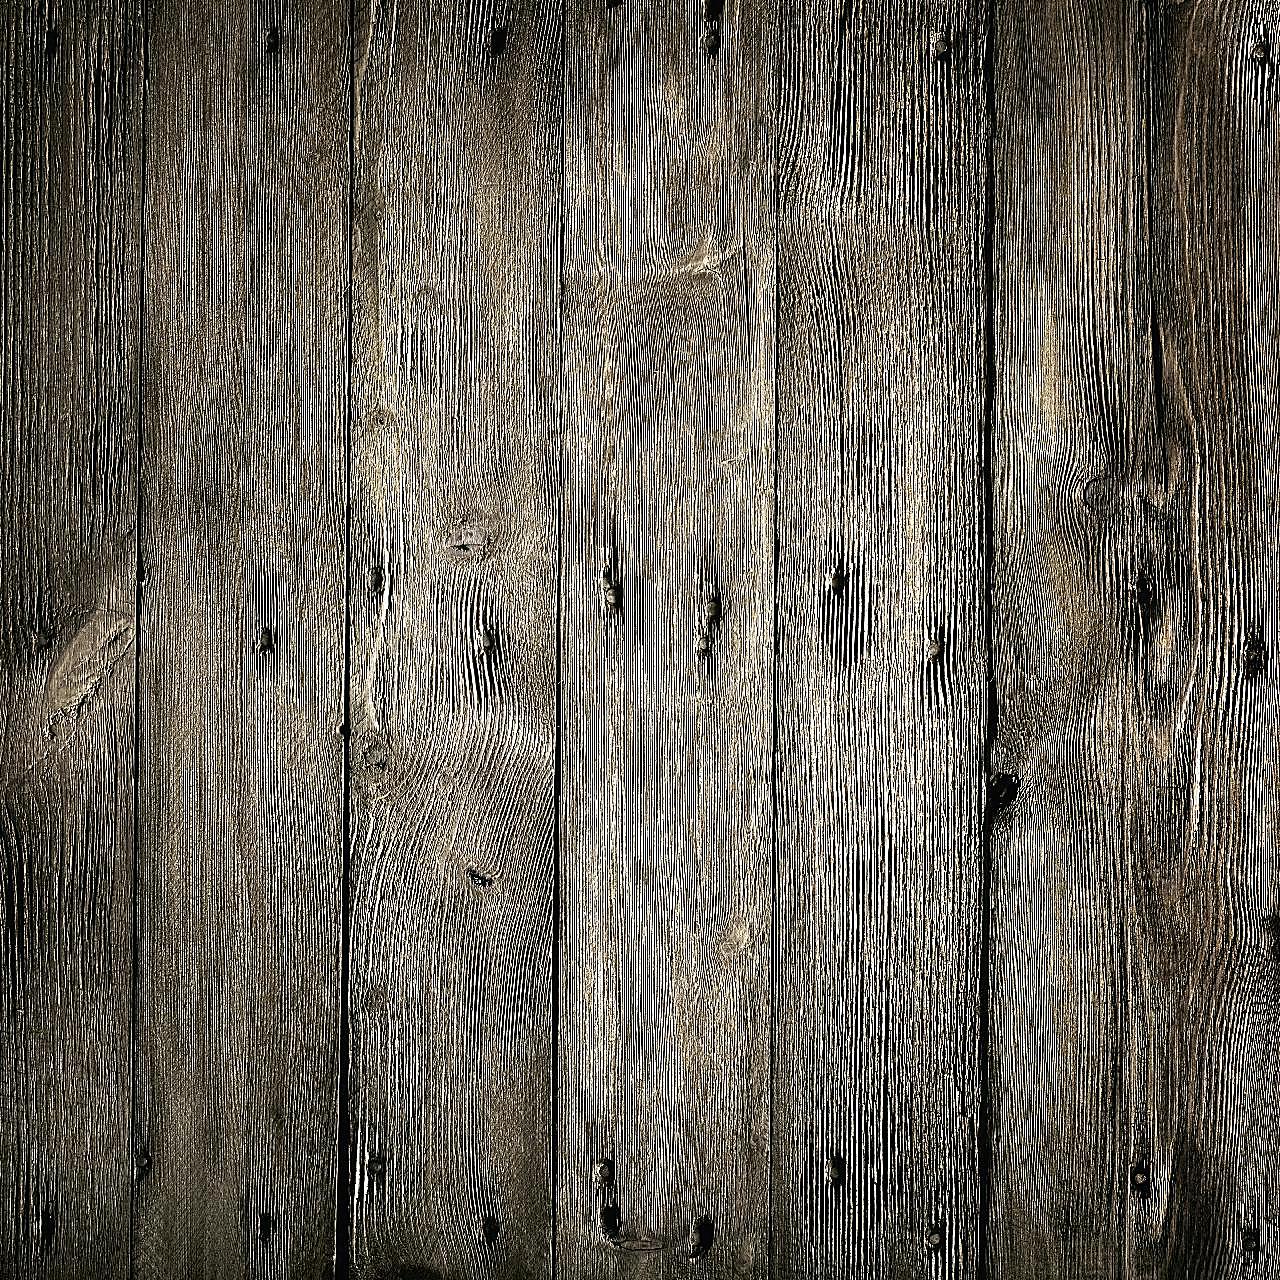 木板木纹2背景摄影